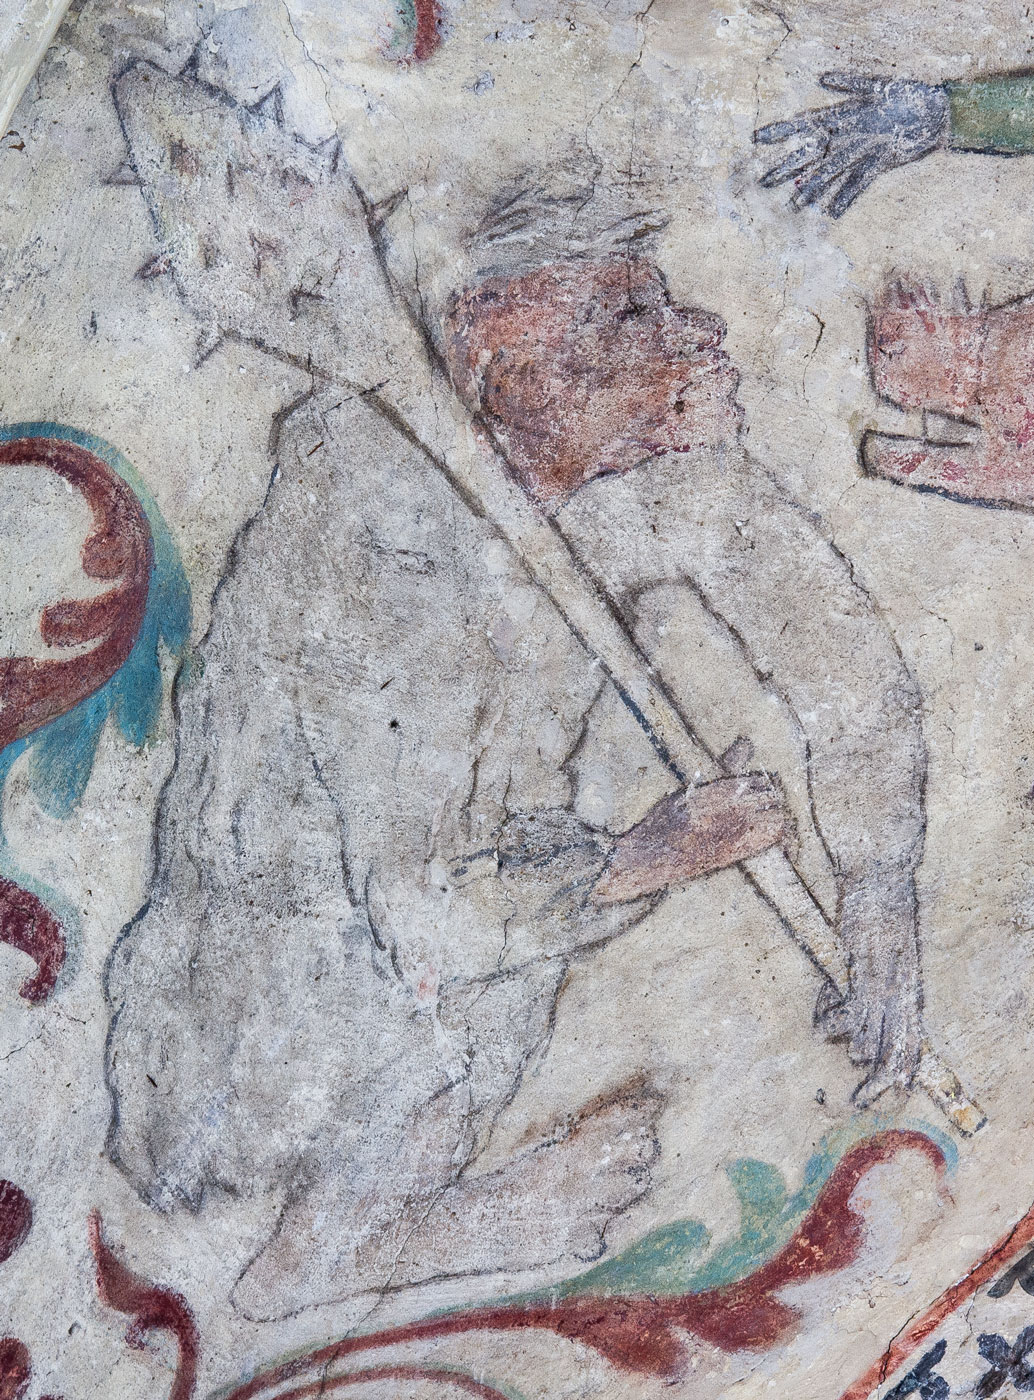 Detalj ur En dvärg, som rider på ett svin fram mot en vildman, som är beväpnad med en spikklubba - Ösmo kyrka